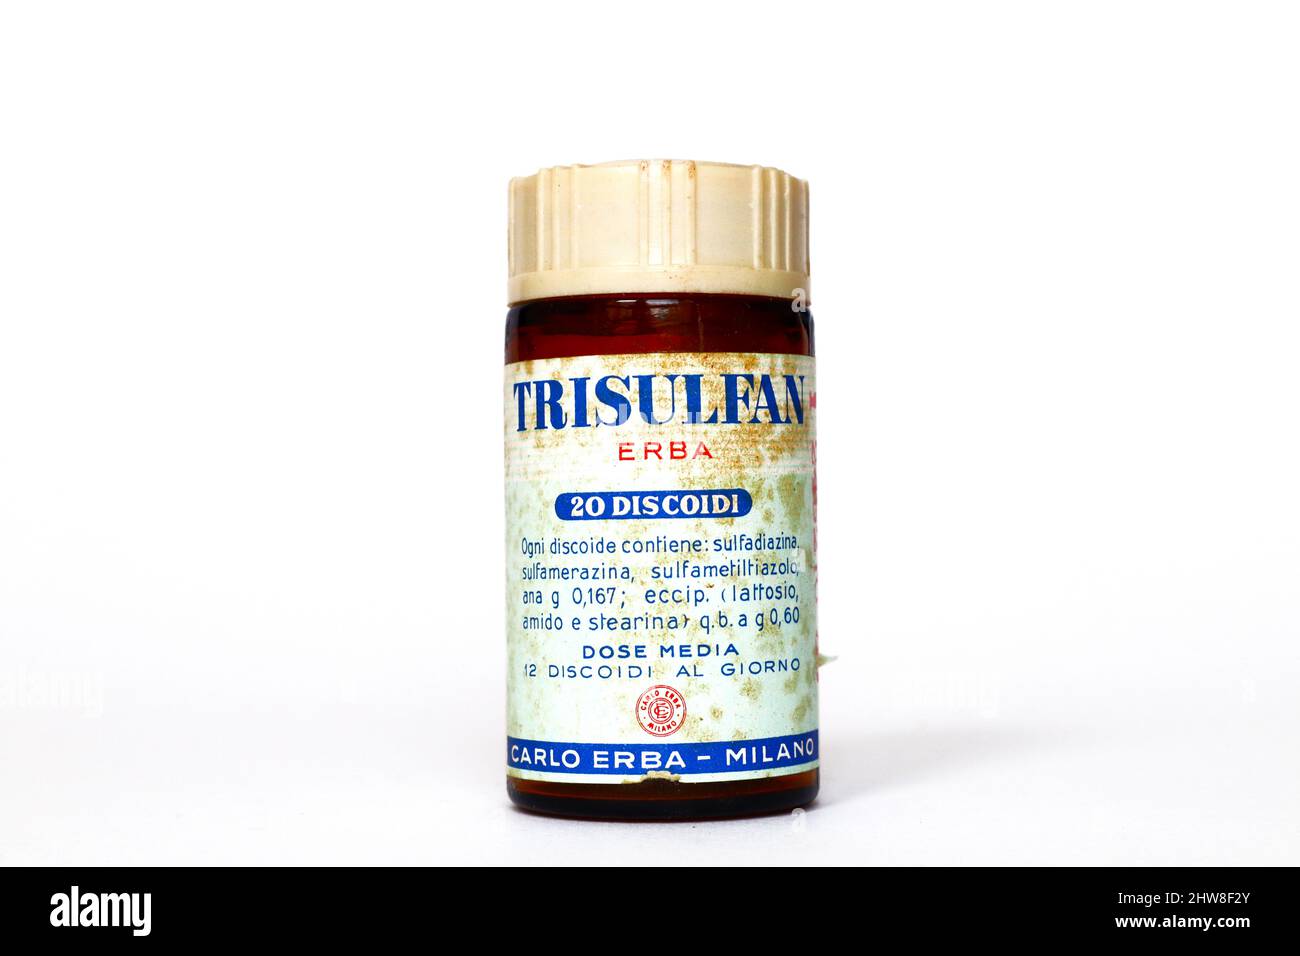 Vintage 1950s TRISULFAN ERBA, medicinale sulfonamidico per il trattamento di streptococcus pneumoniae, infezioni da meningococco. CARLO ERBA - Milano (Italia) Foto Stock